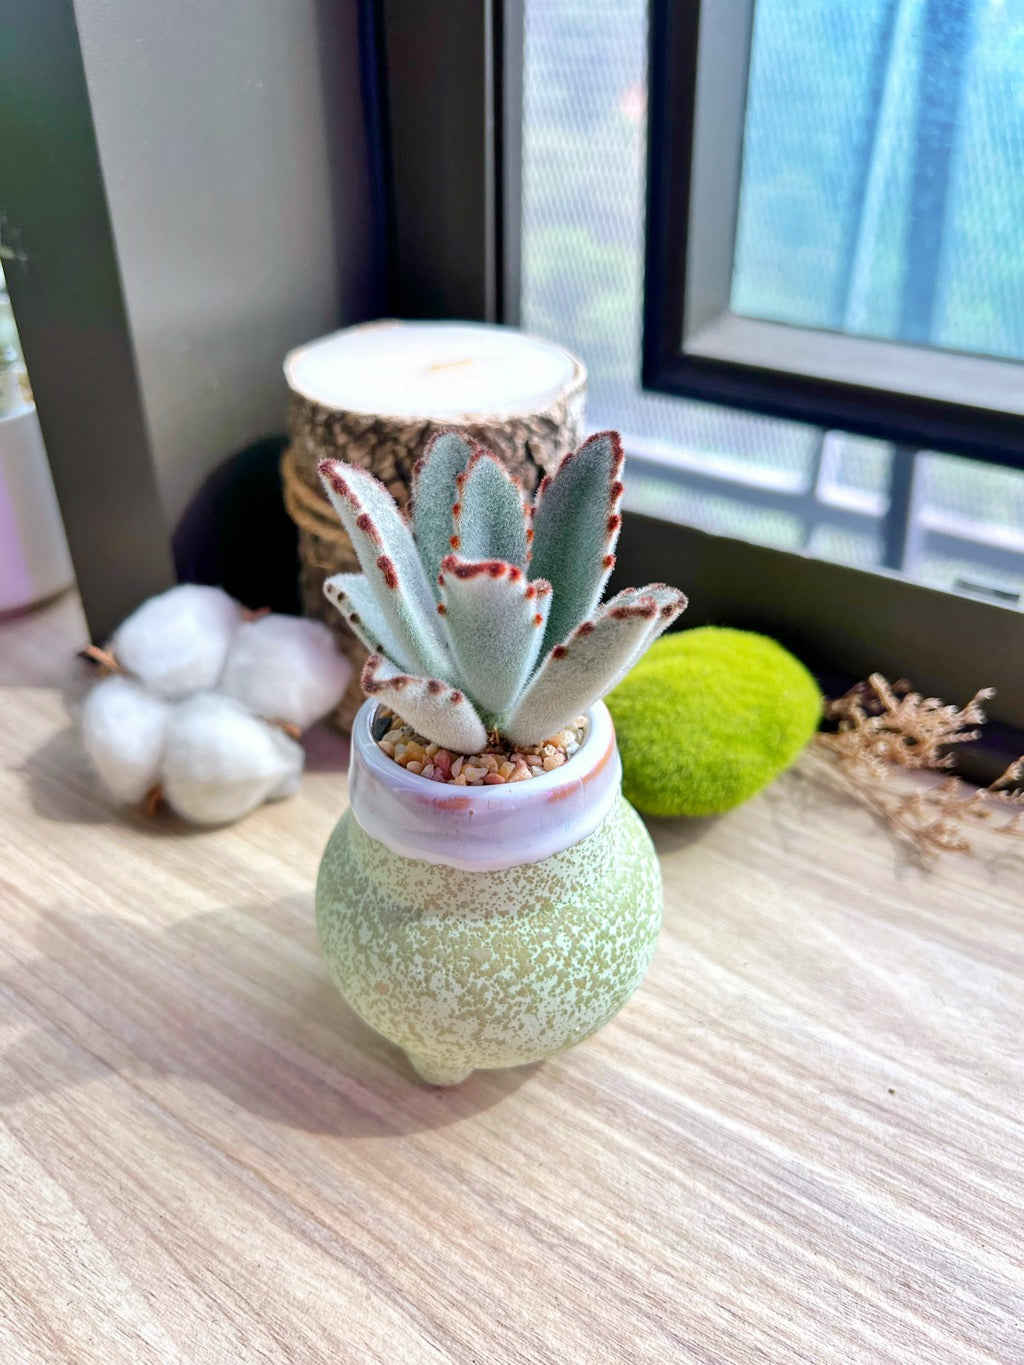 Panda plant in textured ceramic pot